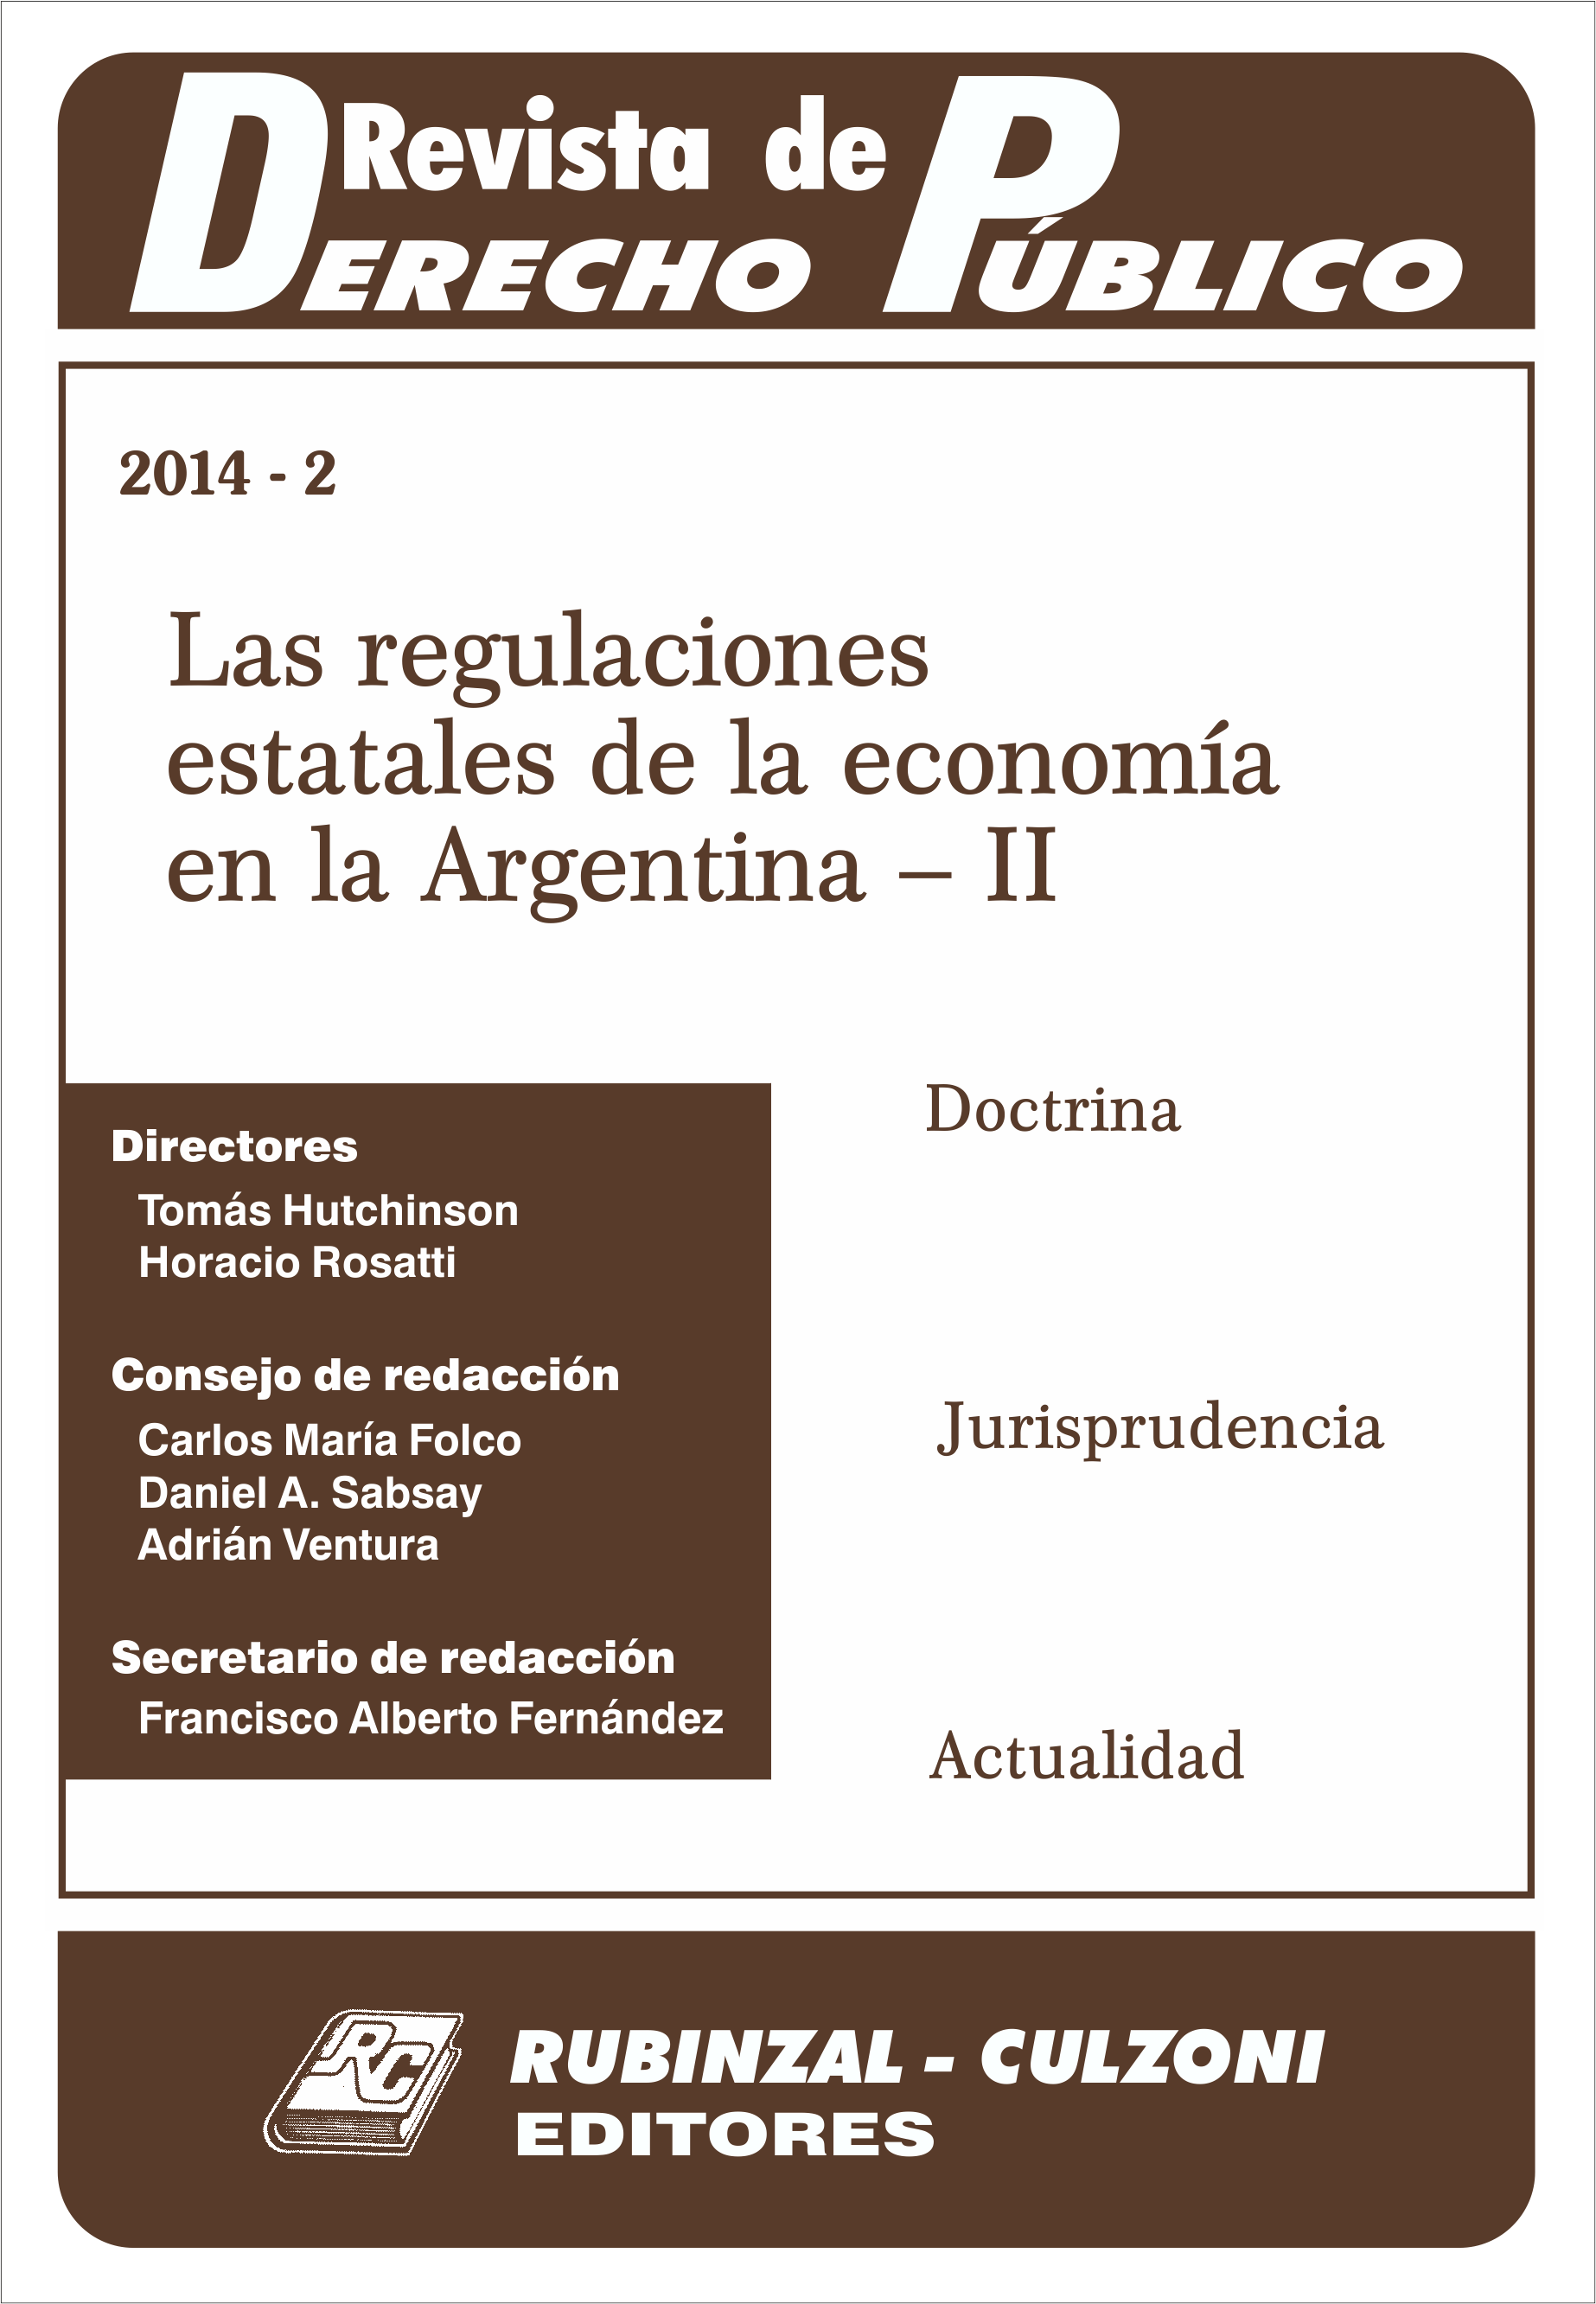 Revista de Derecho Público - Las regulaciones estatales de la economía en la Argentina - II